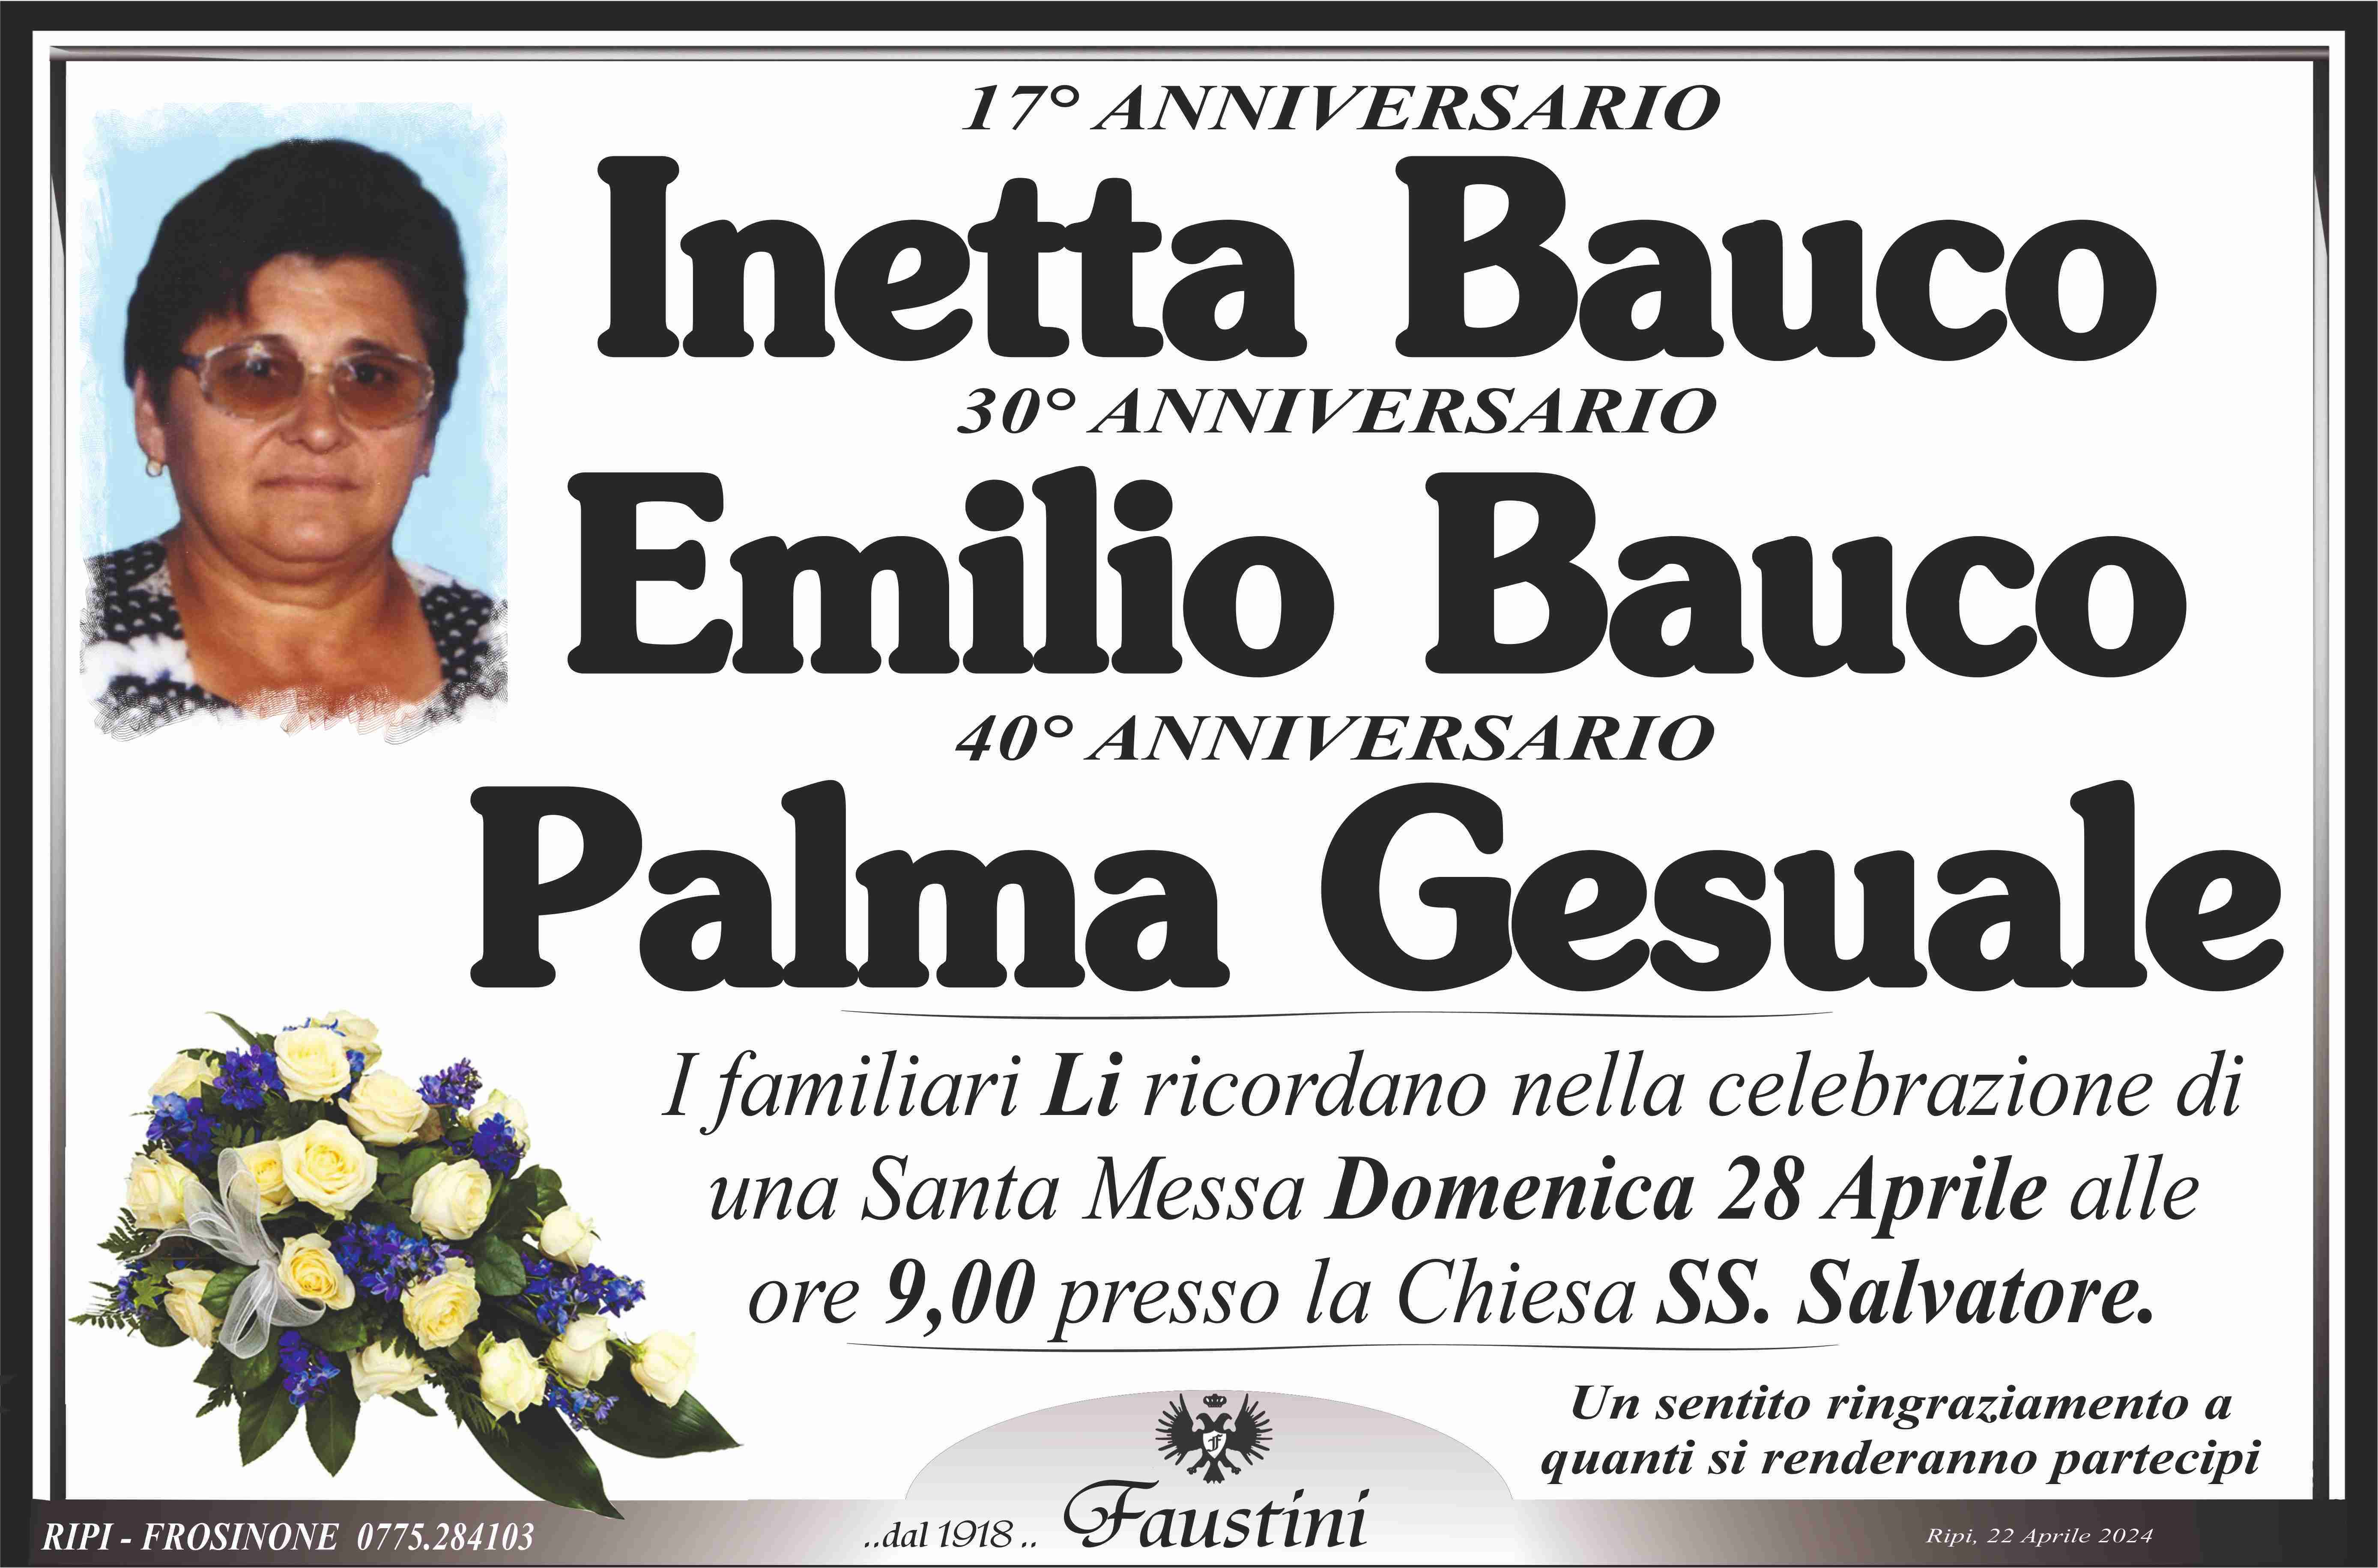 Inetta Bauco - Emilio Bauco - Palma Gesuale